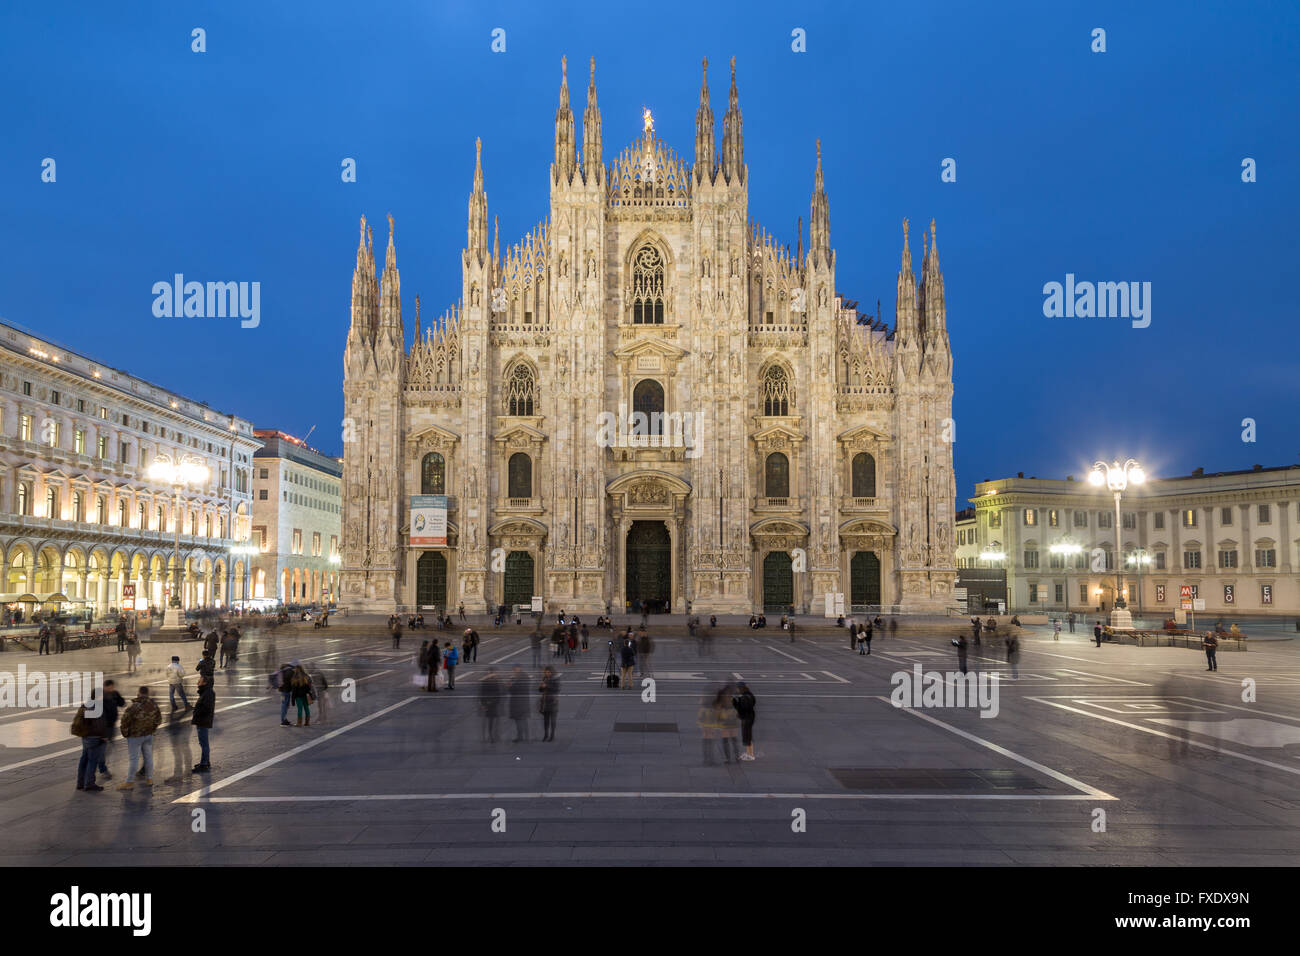 La cathédrale de Milan, la place de la cathédrale ou de la Piazza del Duomo, au crépuscule, Milan, Italie Banque D'Images